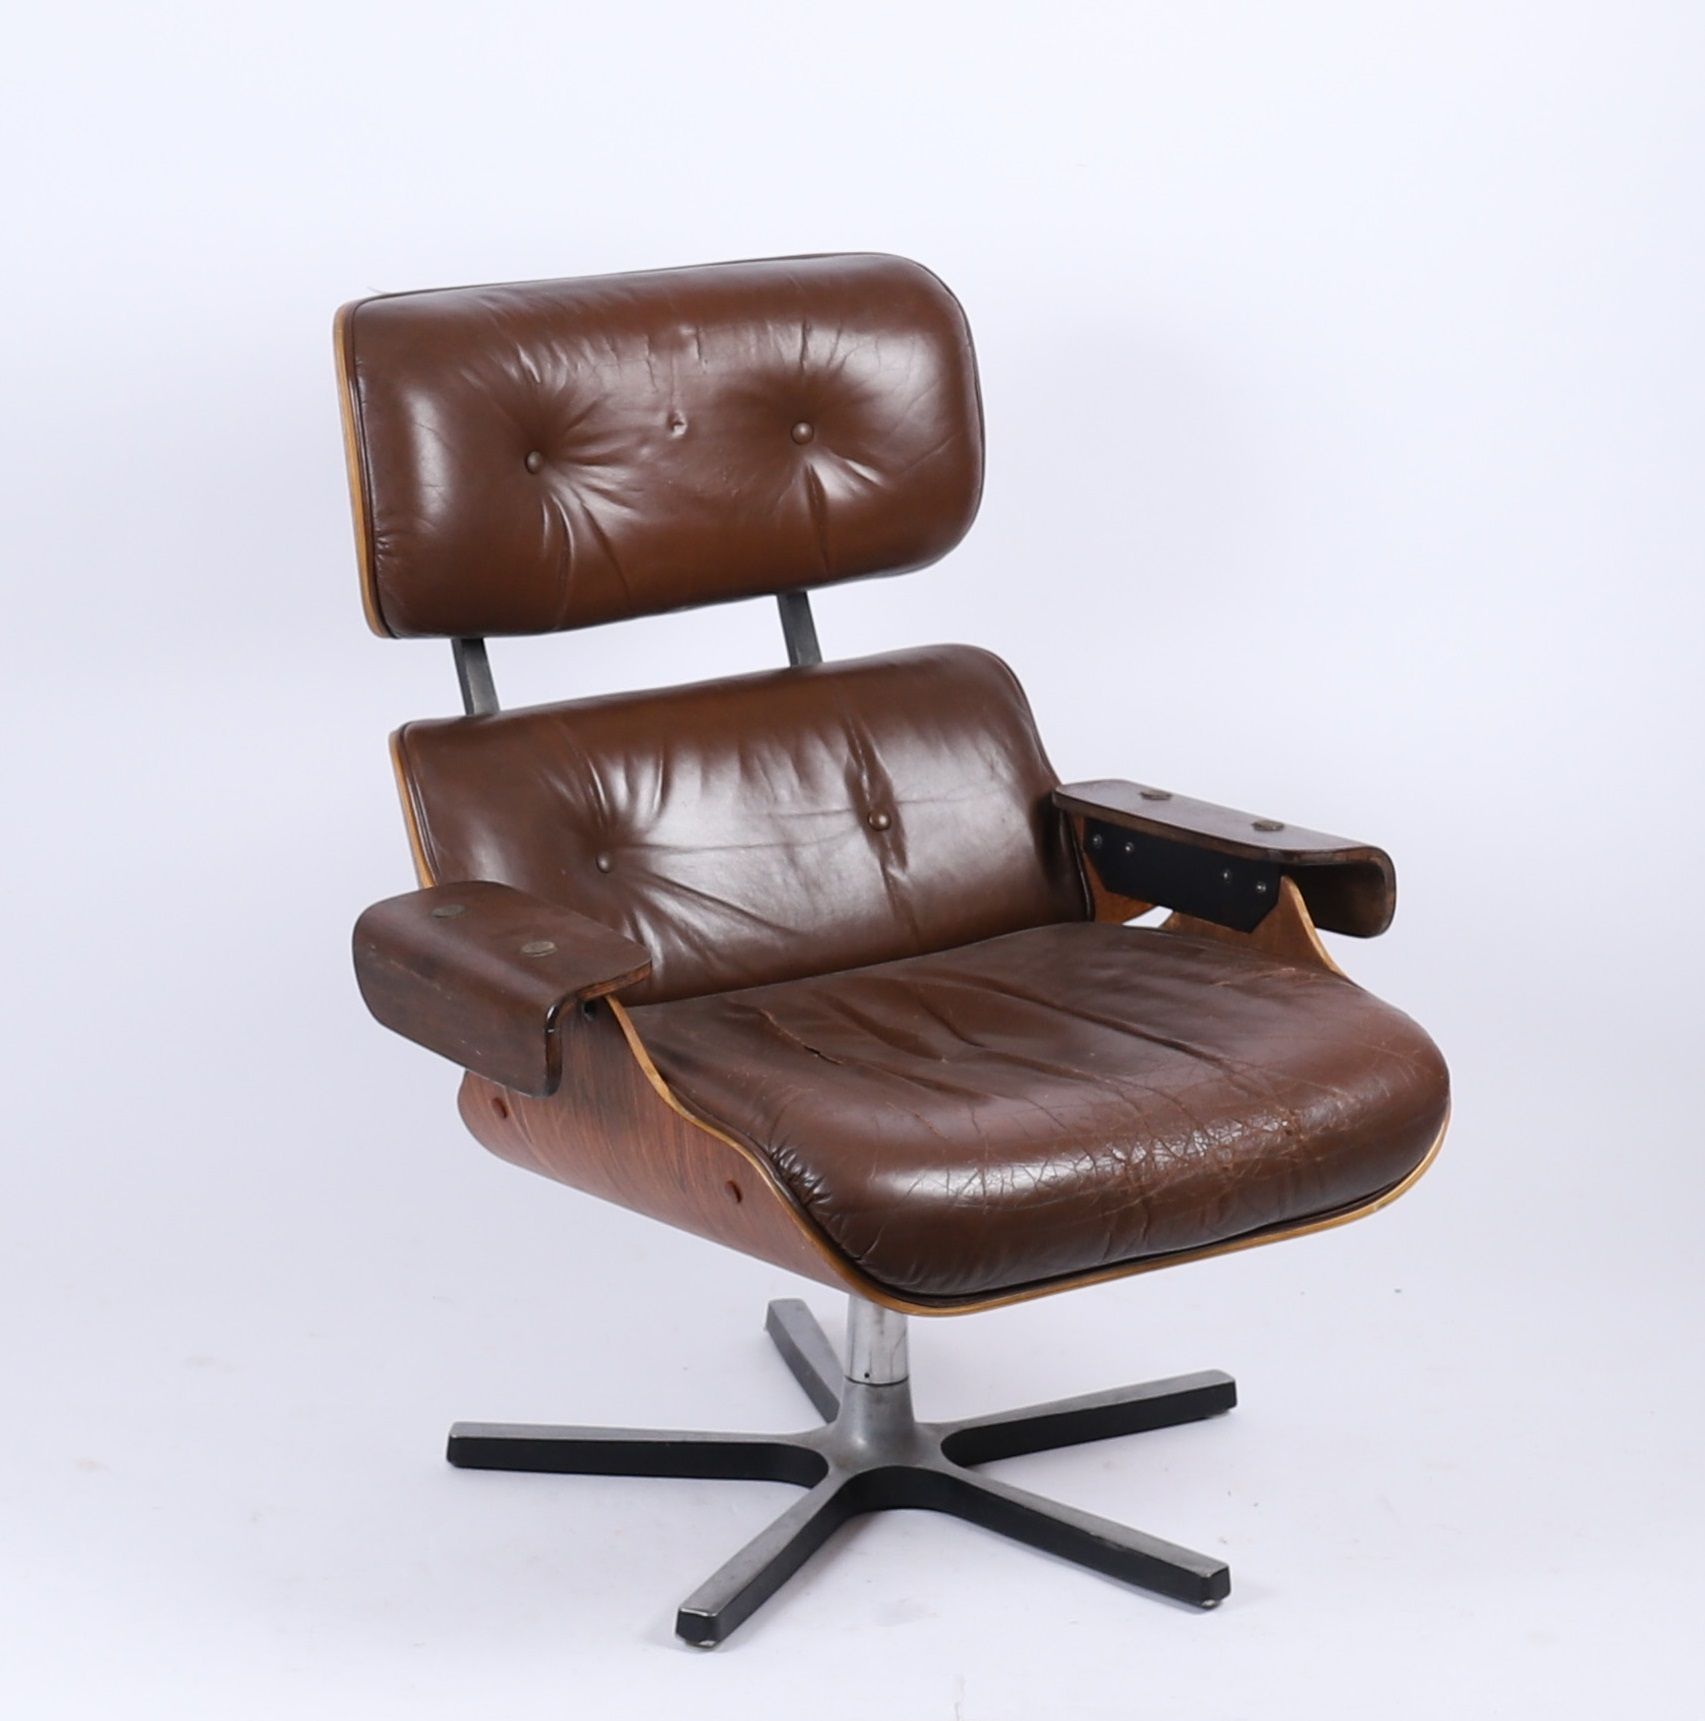 Eames 椅子
休闲椅670 "型号
热成型花梨木饰面的外壳，塑料滑轨上的黑色漆面金属底座
棕色皮革椅垫
94.5 x 79.5 x 81厘米
原汁原味
使用&hellip;